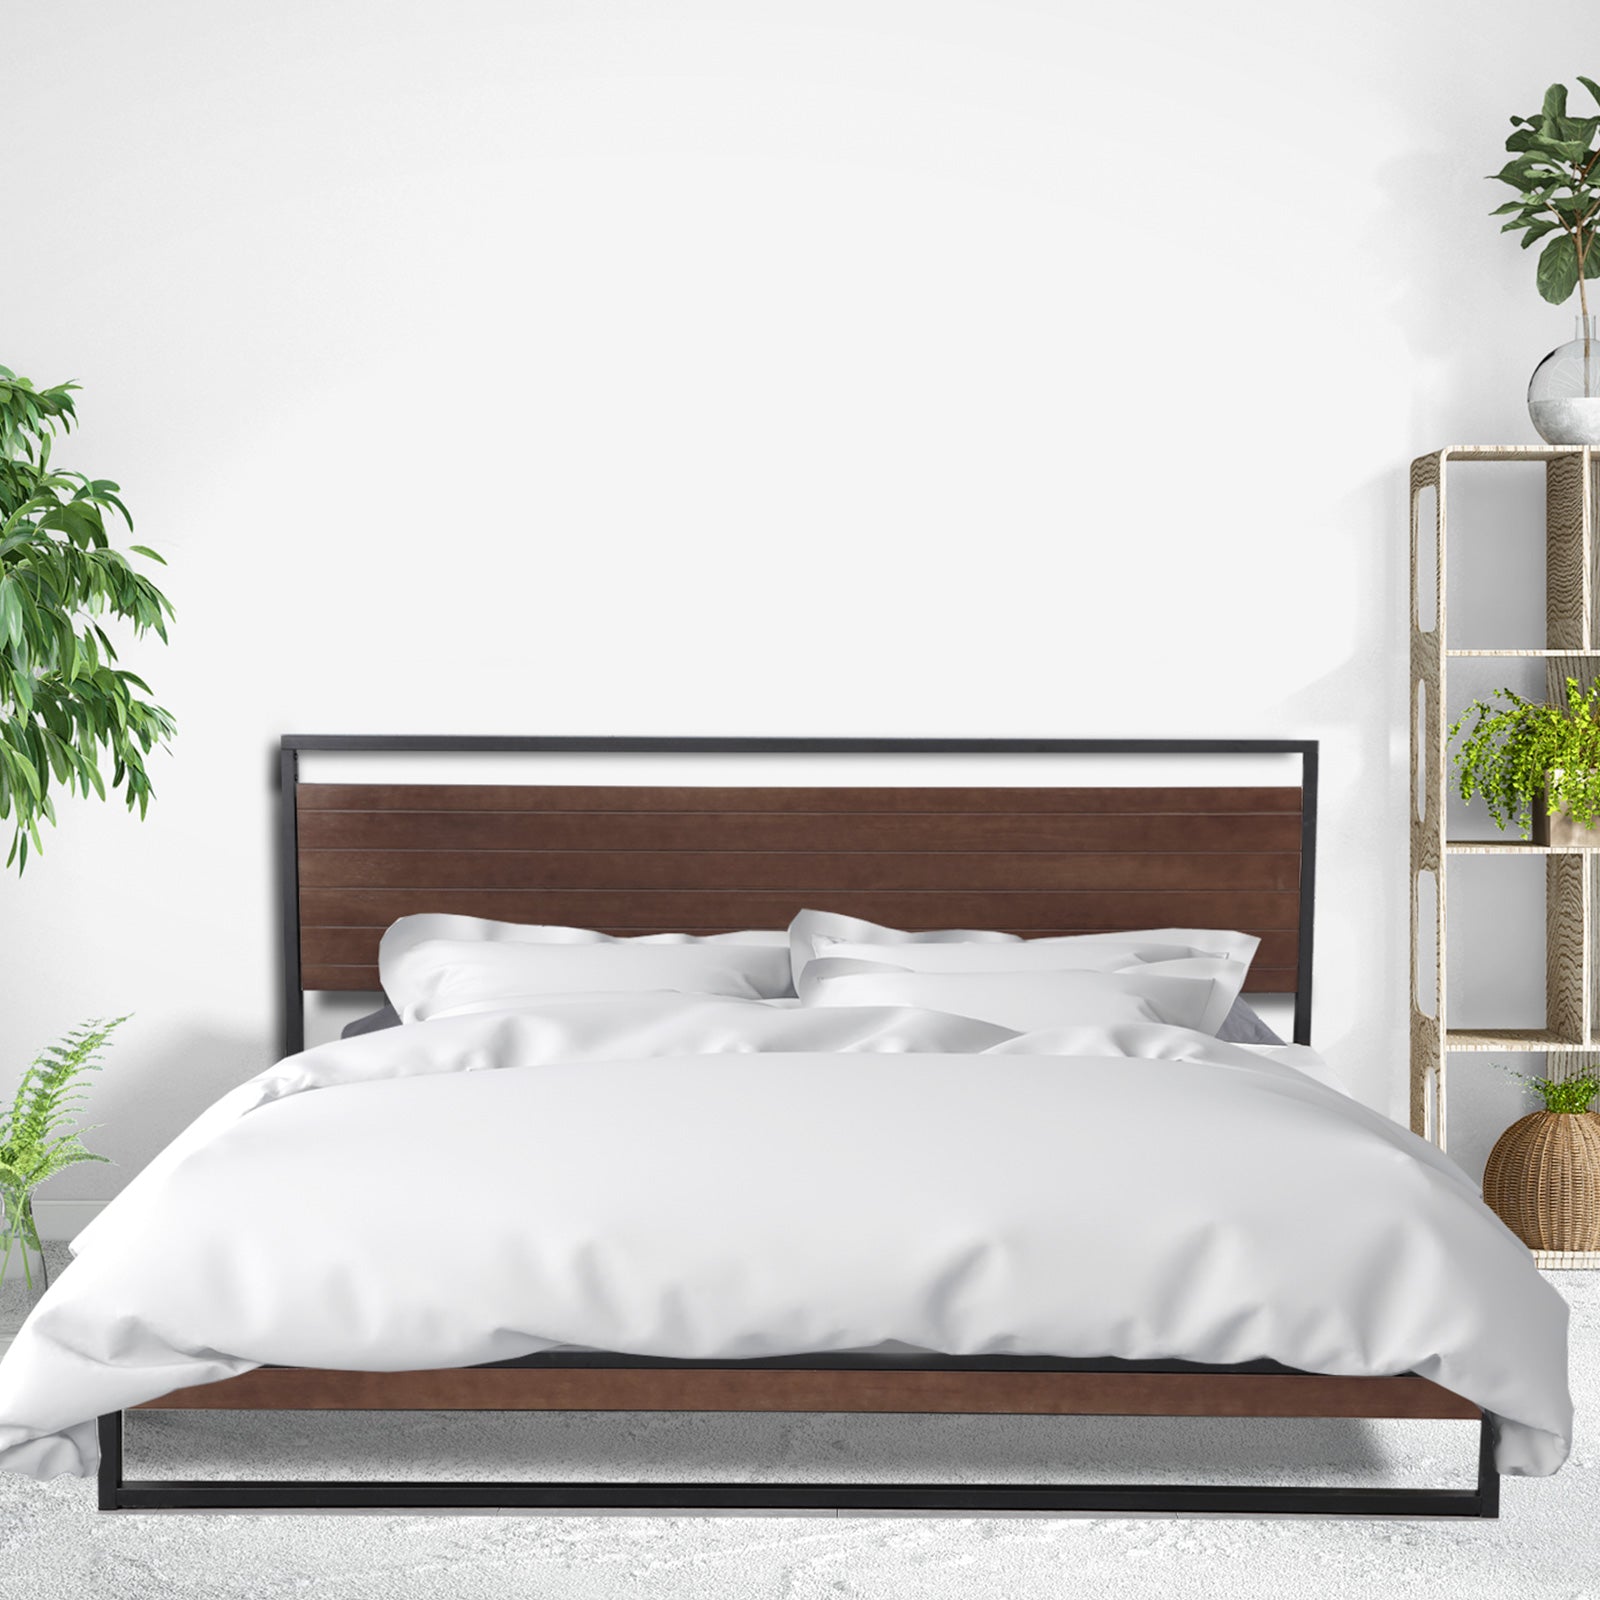 Azure Bed Frame + Comforpedic Mattress + 250GSM Bamboo Quilt Package Deal Set - Queen